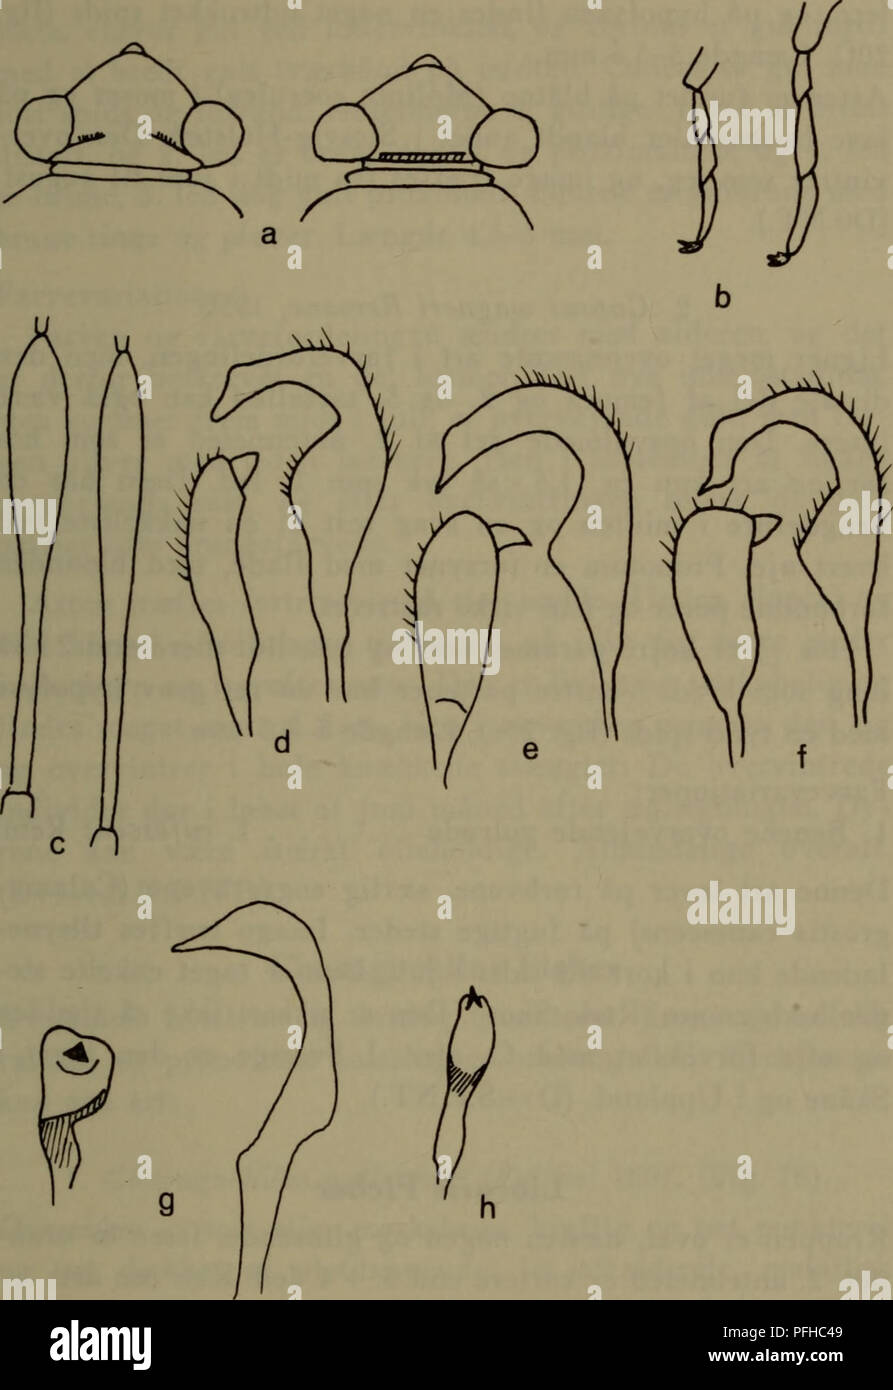 . Danmarks fauna; illustrerede haandbøger over den danske dyreverden... 107. Fig. 20. Capsaria. a: Til venstre hovedet af L. pabulinus til højre af E. pratensis. b: Til venstre bagfodsleddet hos Plesiocoris rugicollis til højre hos E. pratensis. c: Til venstre 2. antenneled hos C. ater til højre hos C. wagneri, begge Så- Derefter højre og venstre paramer hos d: C. ater. e: C. wagneri. f: C. pilifer. g: P. unifasciatus. (Efter Wagner 1952, skematisk), h: Højre paramer hos P. brevicomis.. Please note that these images are extracted from scanned page images that may have been digitally enhanced f Stock Photo